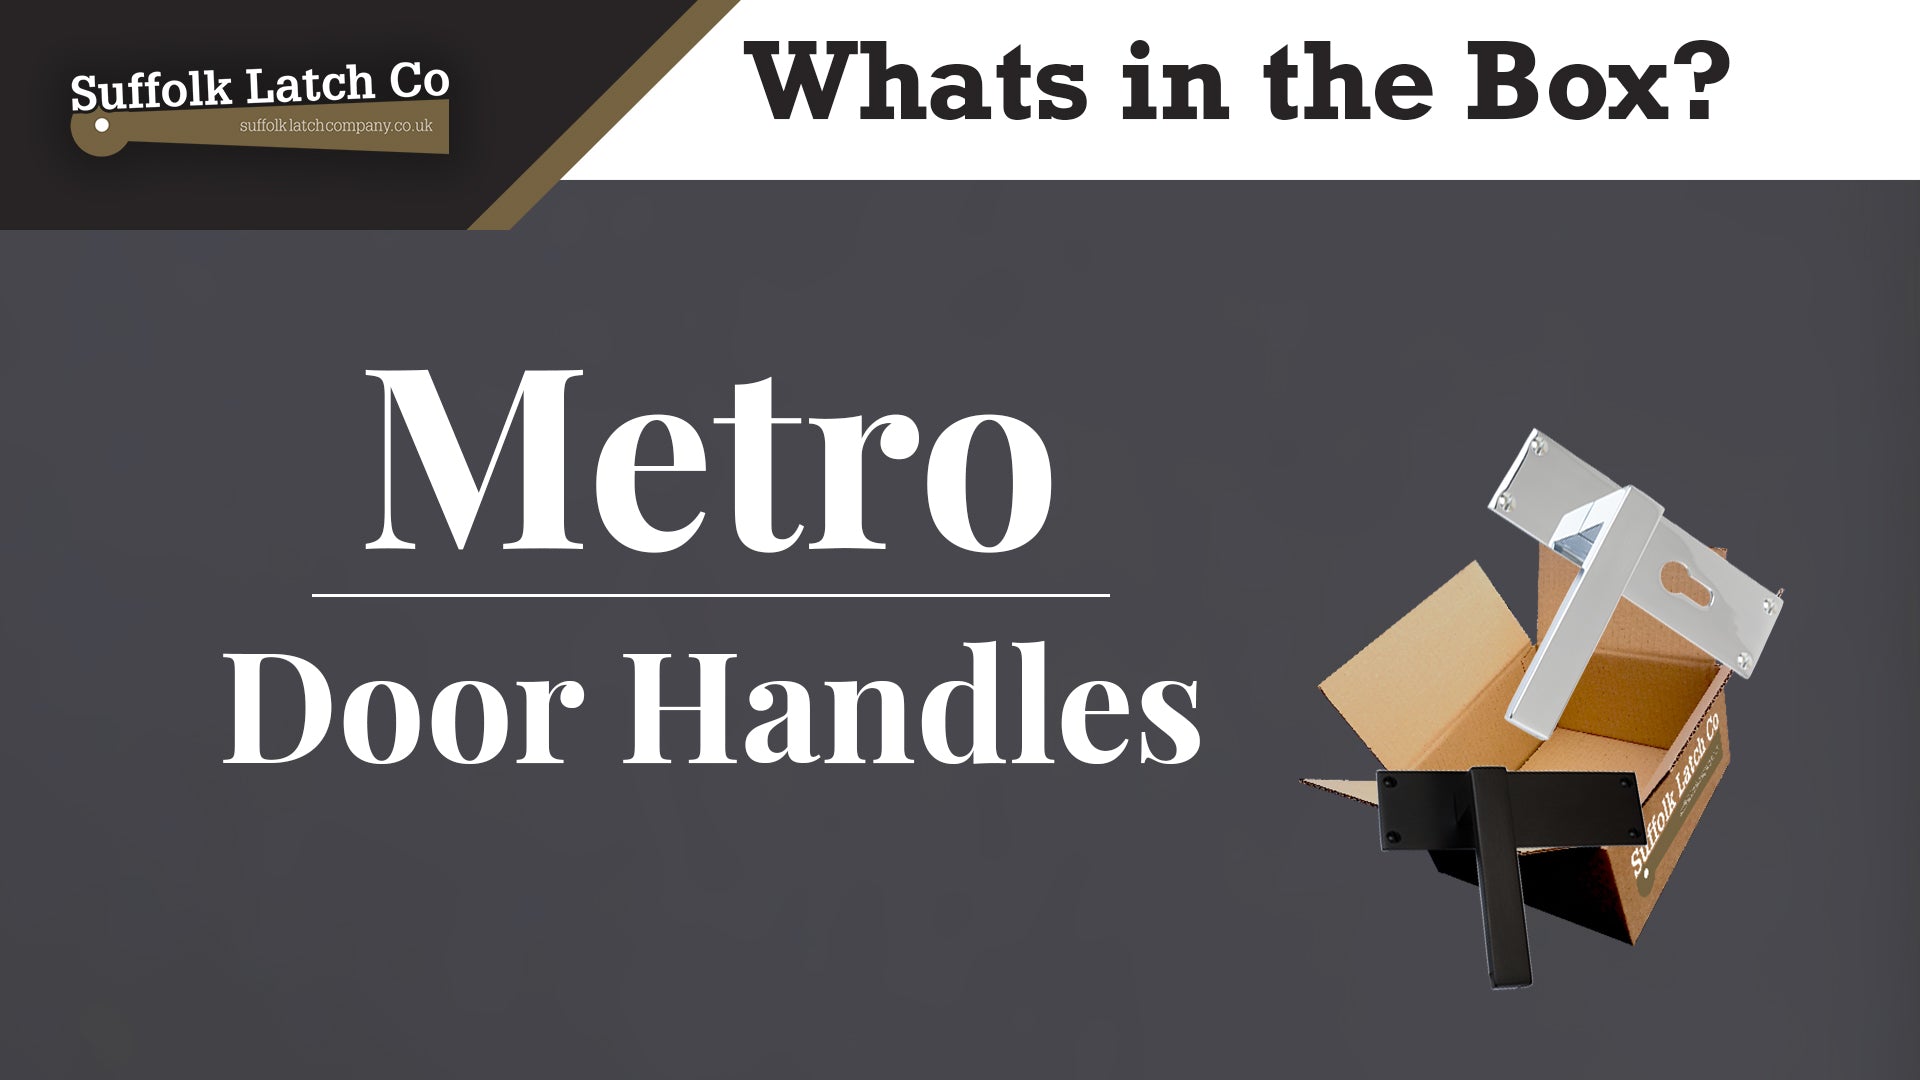 What's in the box: Metro Door Handles